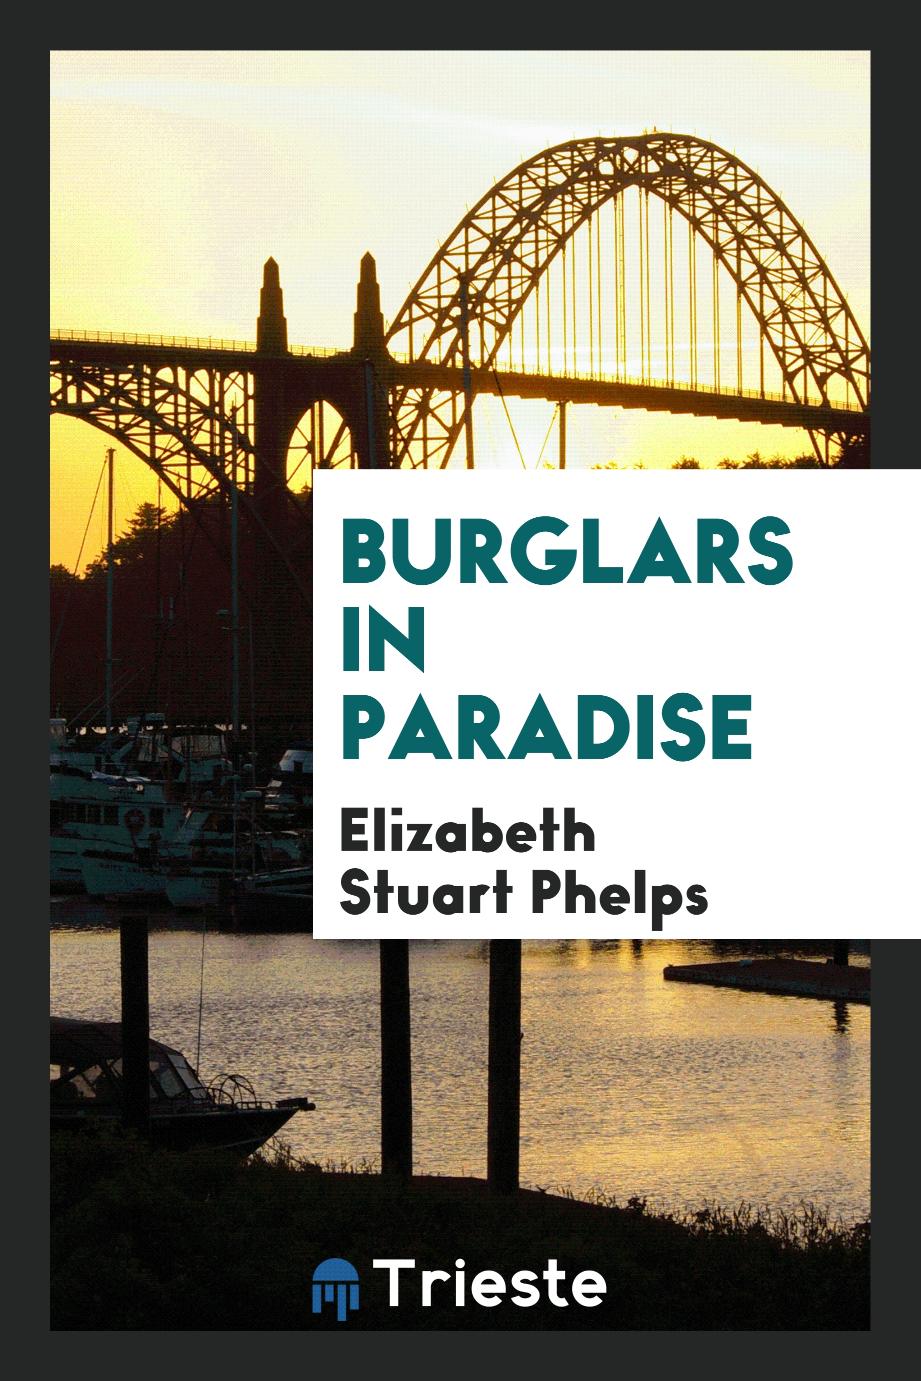 Burglars in Paradise